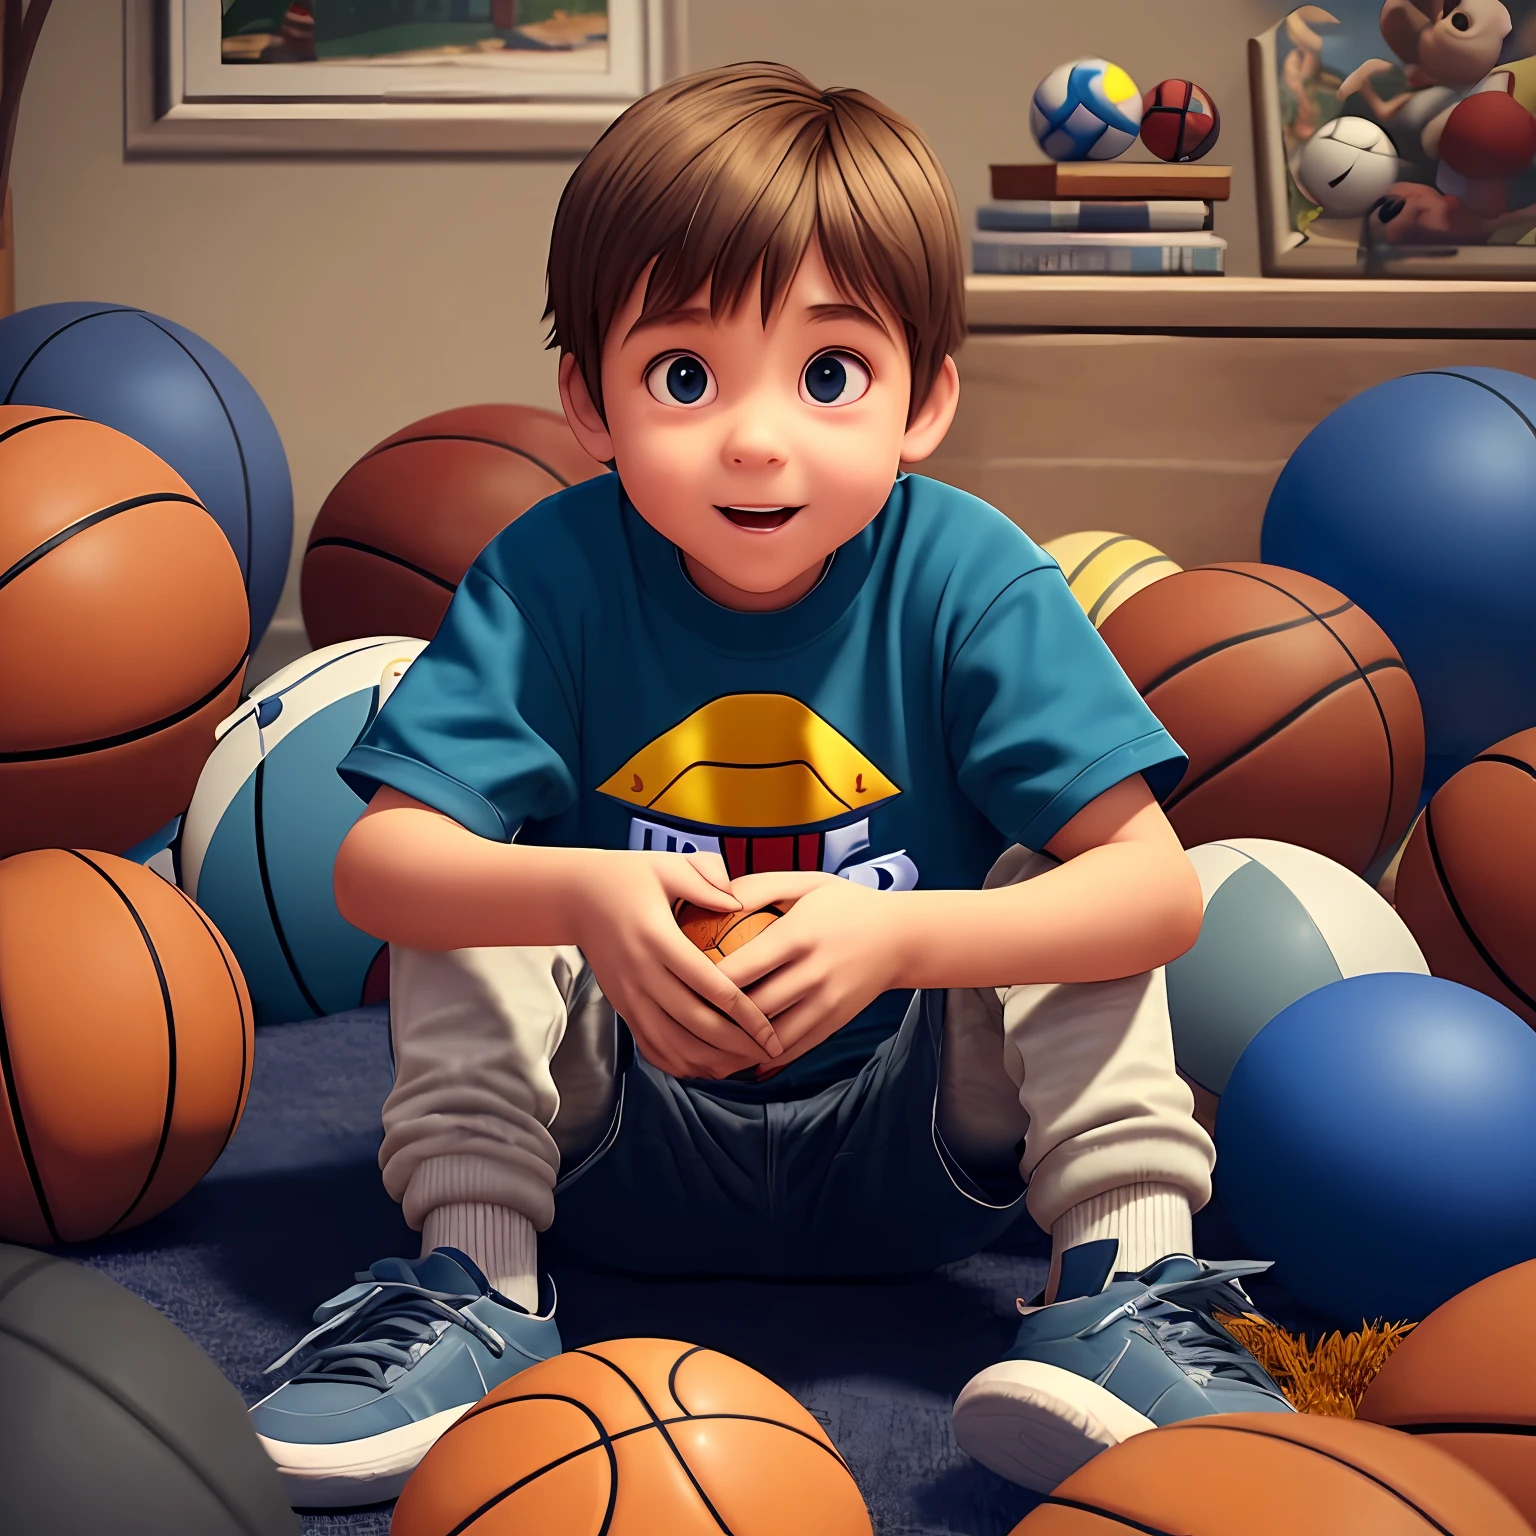 Kleiner Junge von vorne gesehen, der im Zimmer sitzt, umgeben von vielen Basketbällen, Pixar-Stil, 3D-Stil, Disney-Stil, 8k, süß --auto